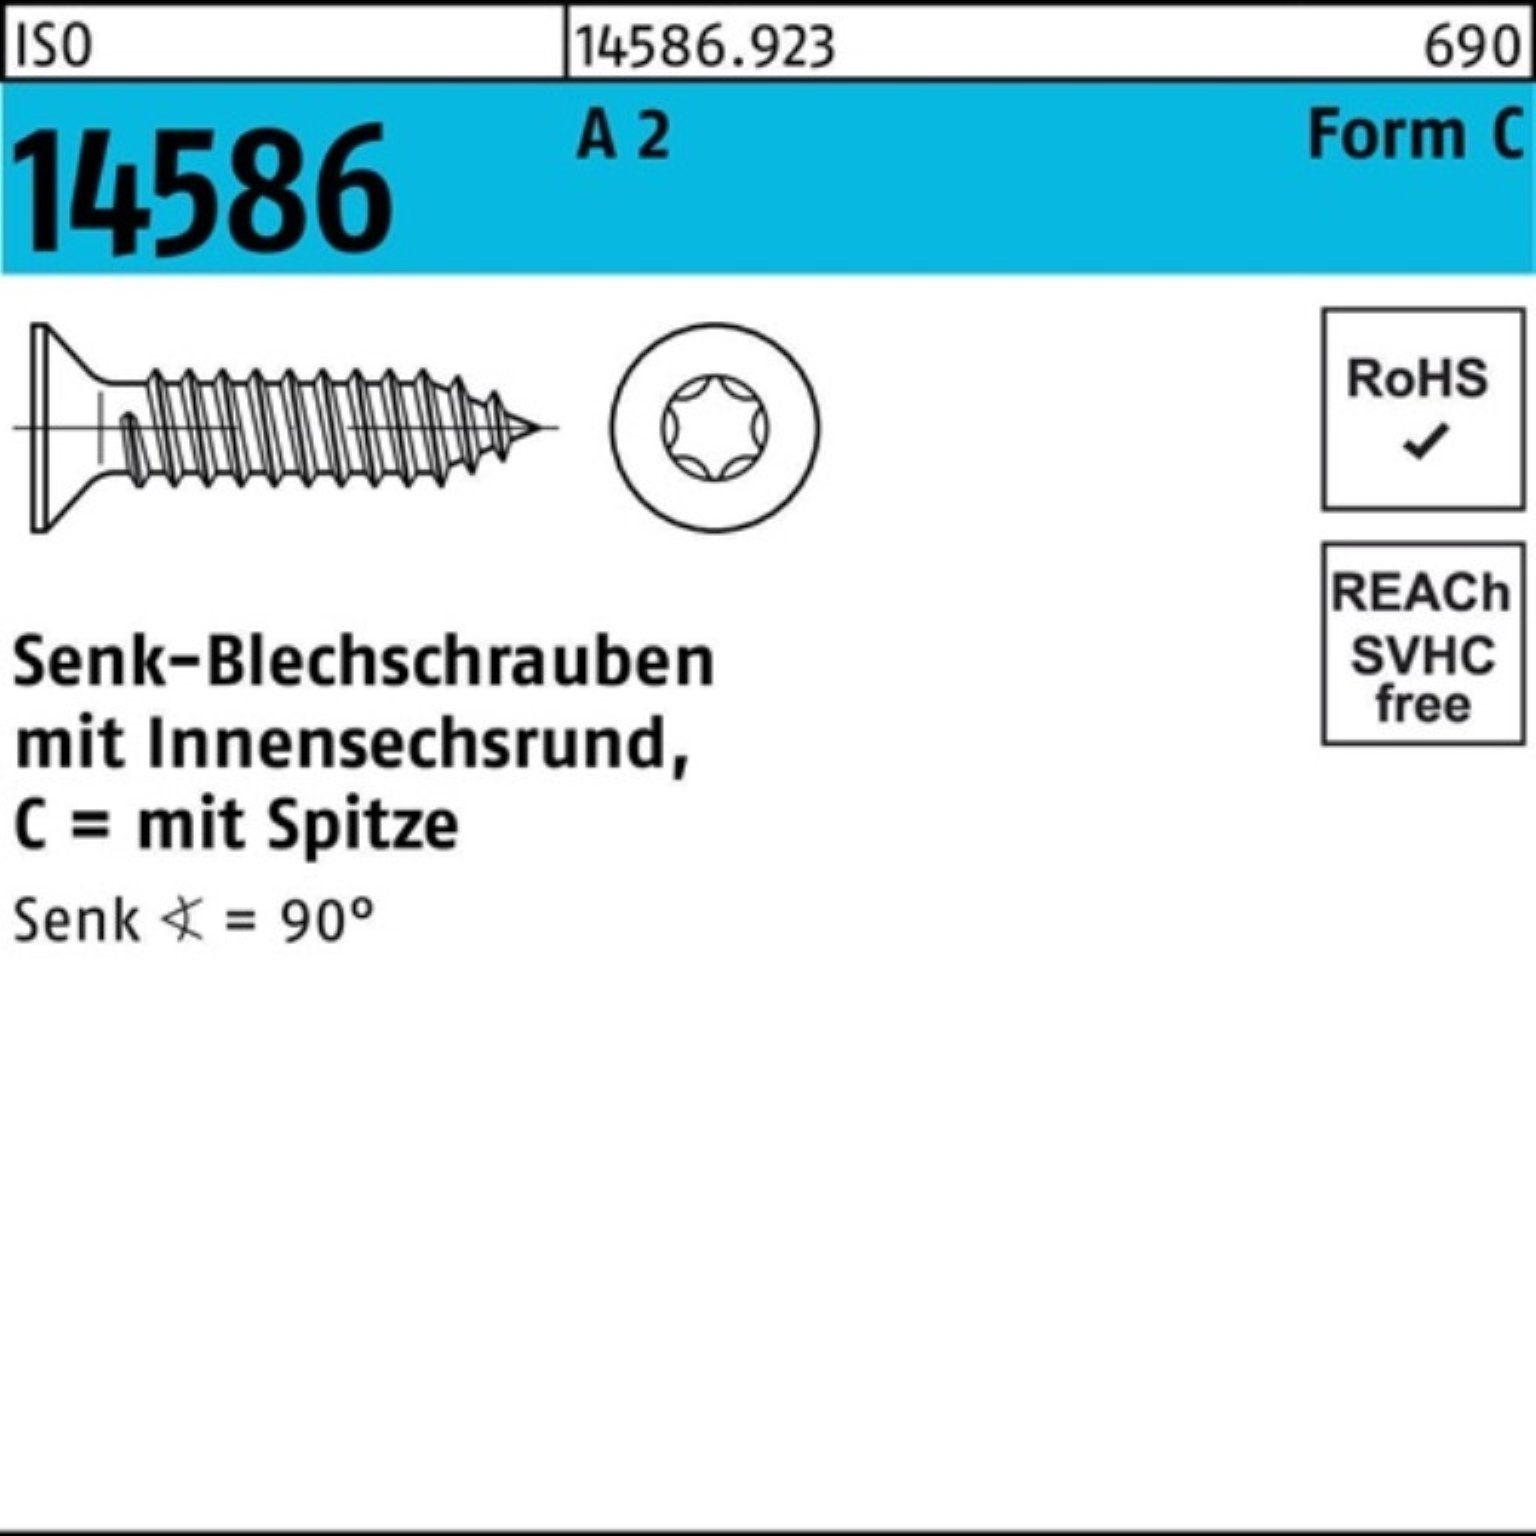 ISR/Spitze Pack 3,5x Reyher 14586 9,5 1000er 2 Schraube T15 A ISO Senkblechschraube -C